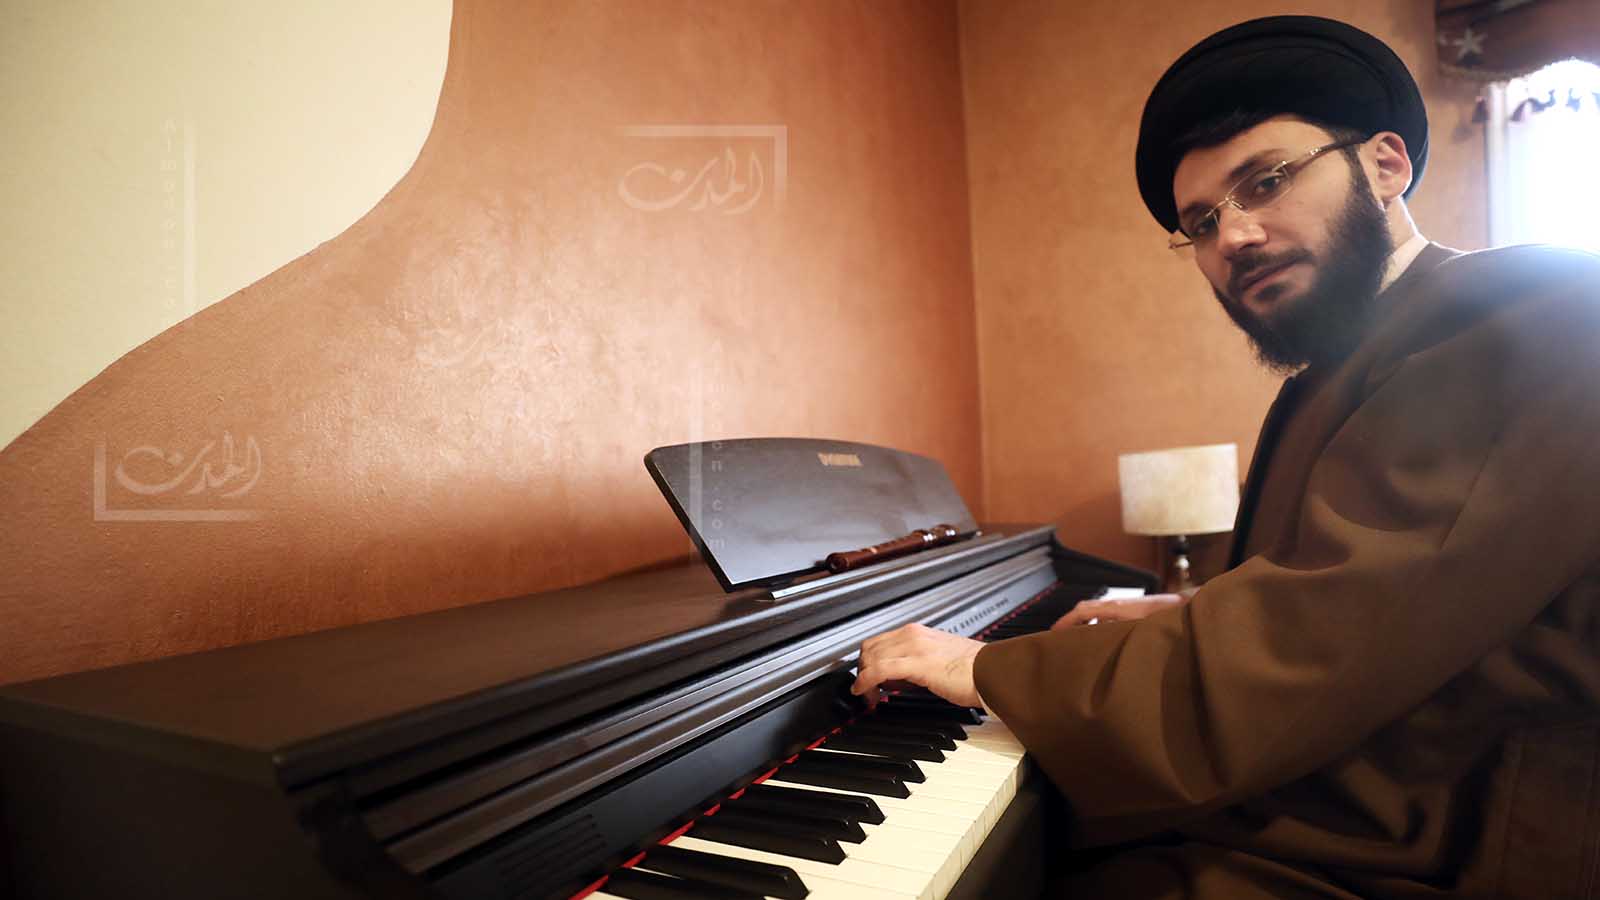 بالفيديو: السيد الحسيني يعزف على البيانو في الضاحية